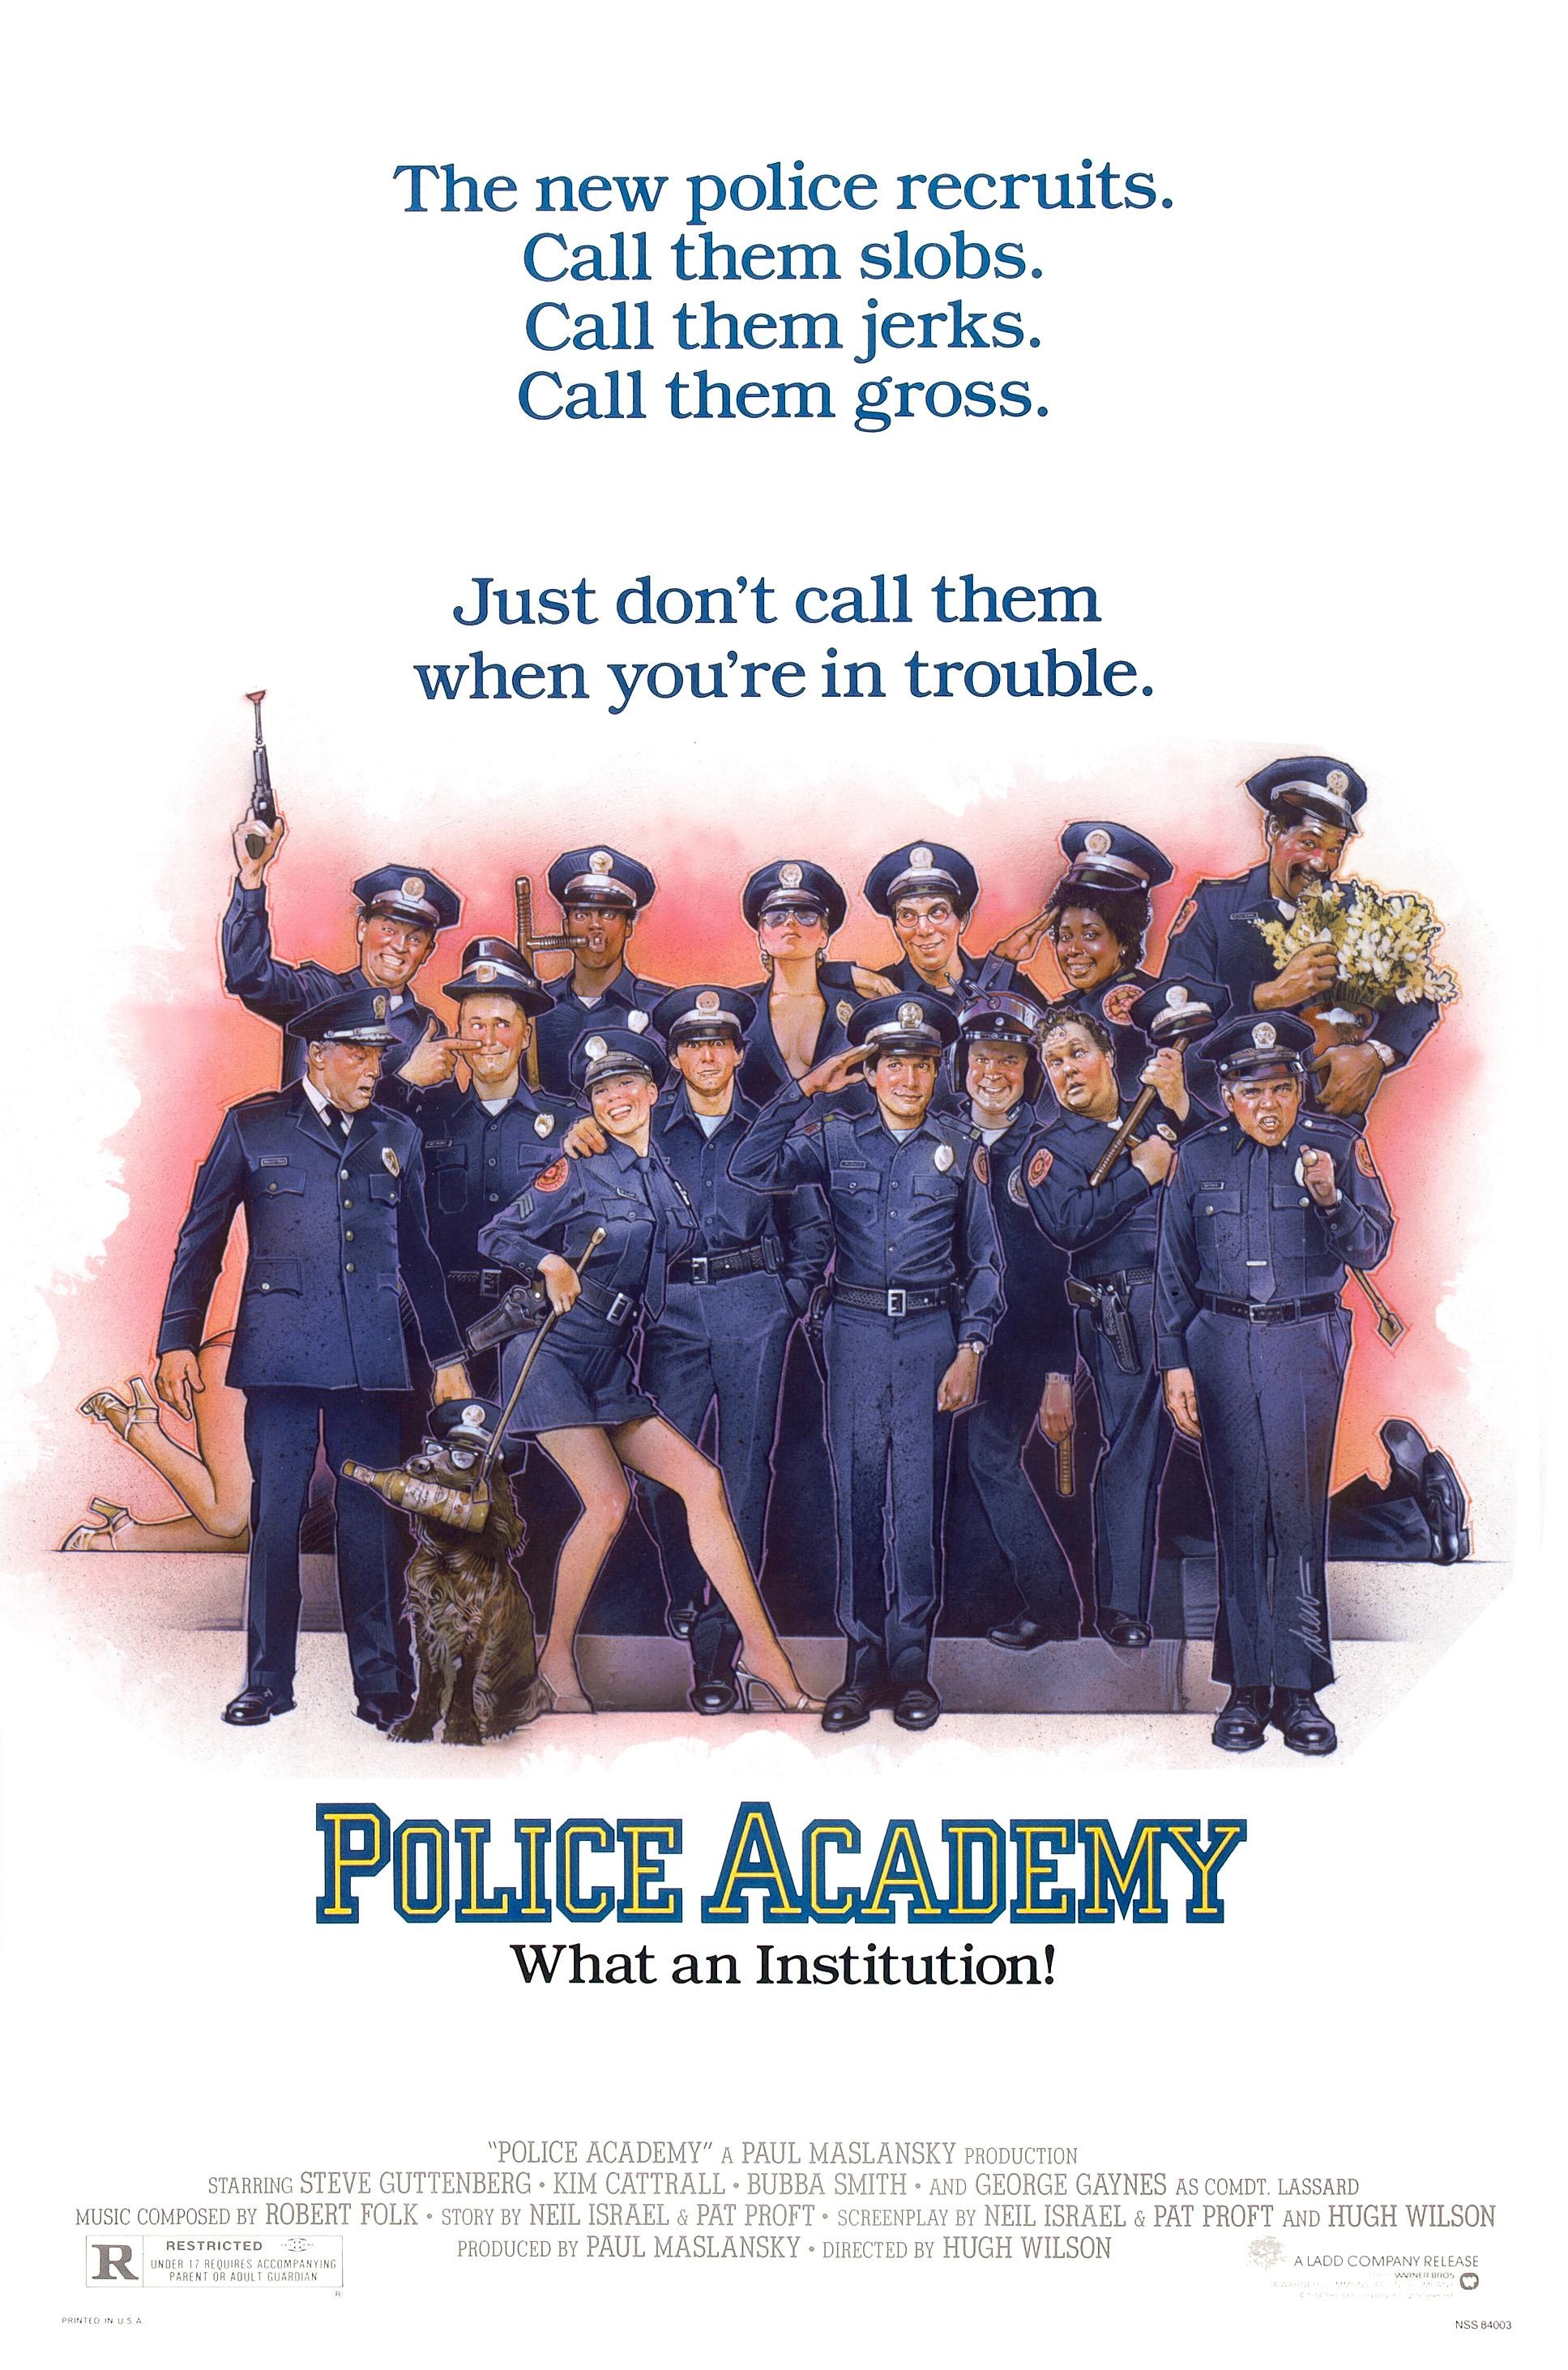 Stiahni si Filmy CZ/SK dabing Policejni akademie - Police academy I (1984)(Remastered)(1080p)(2xCZ) = CSFD 80%